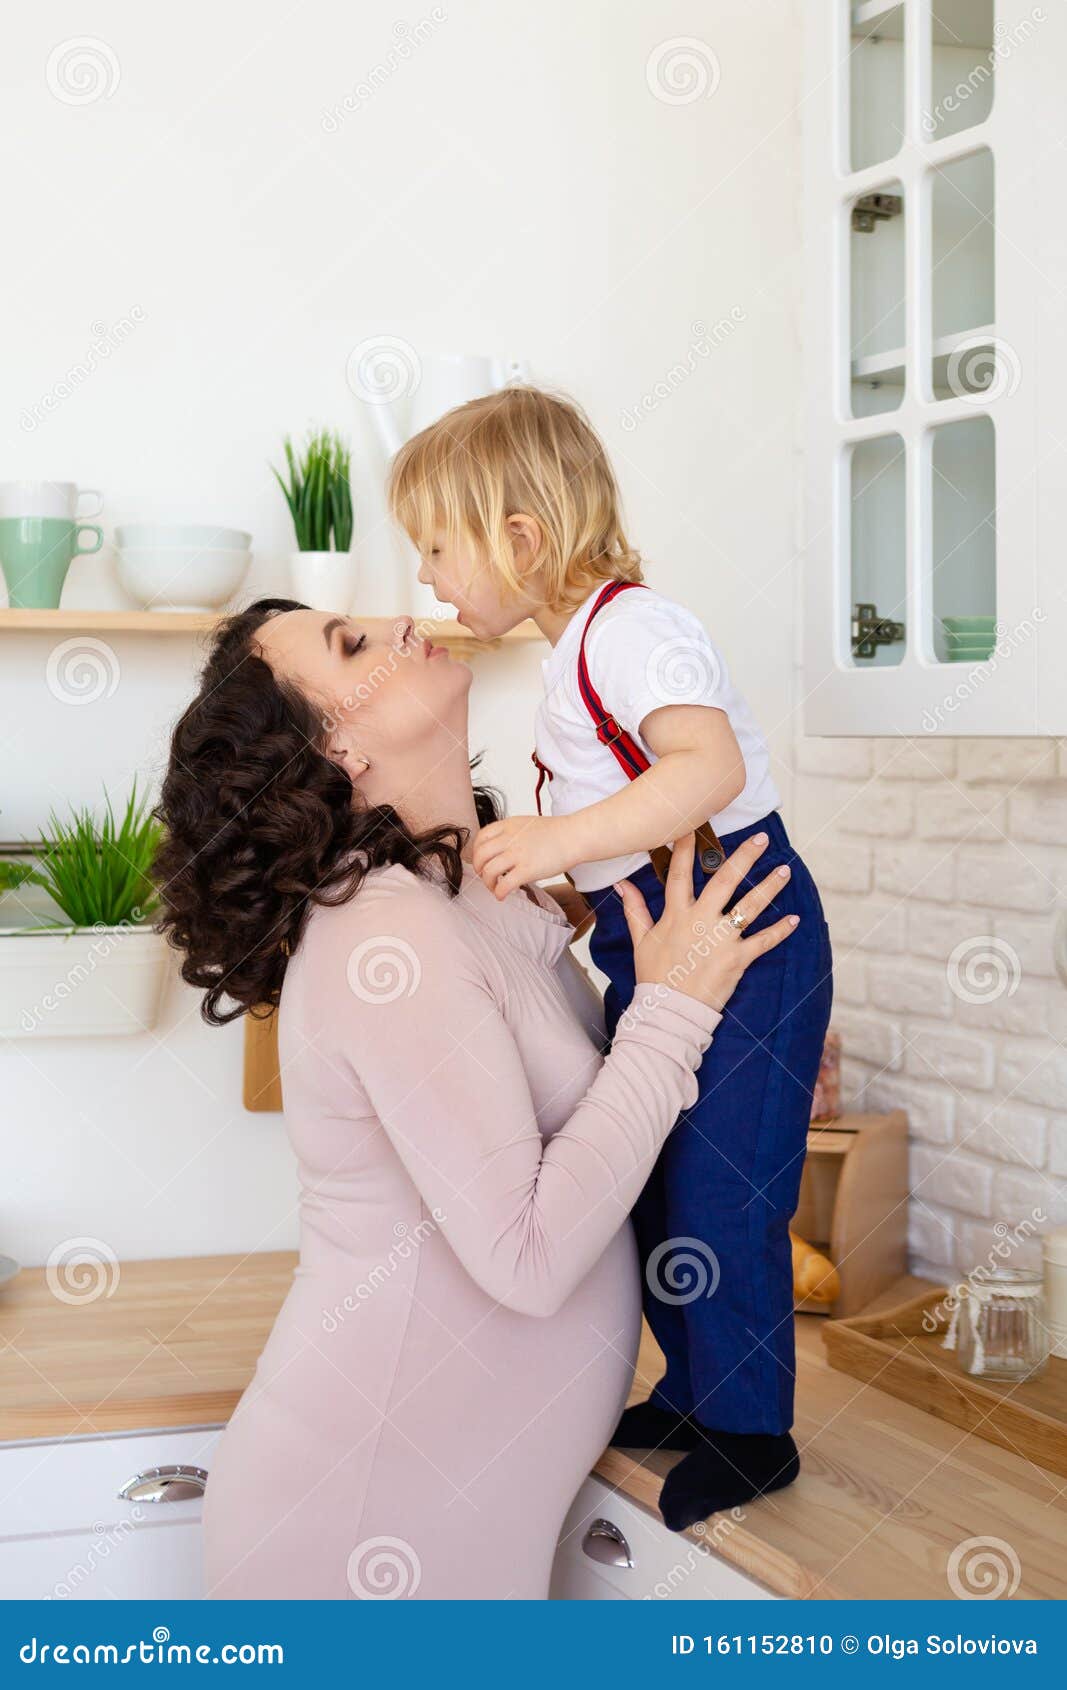 мать целует дочери грудь фото 98